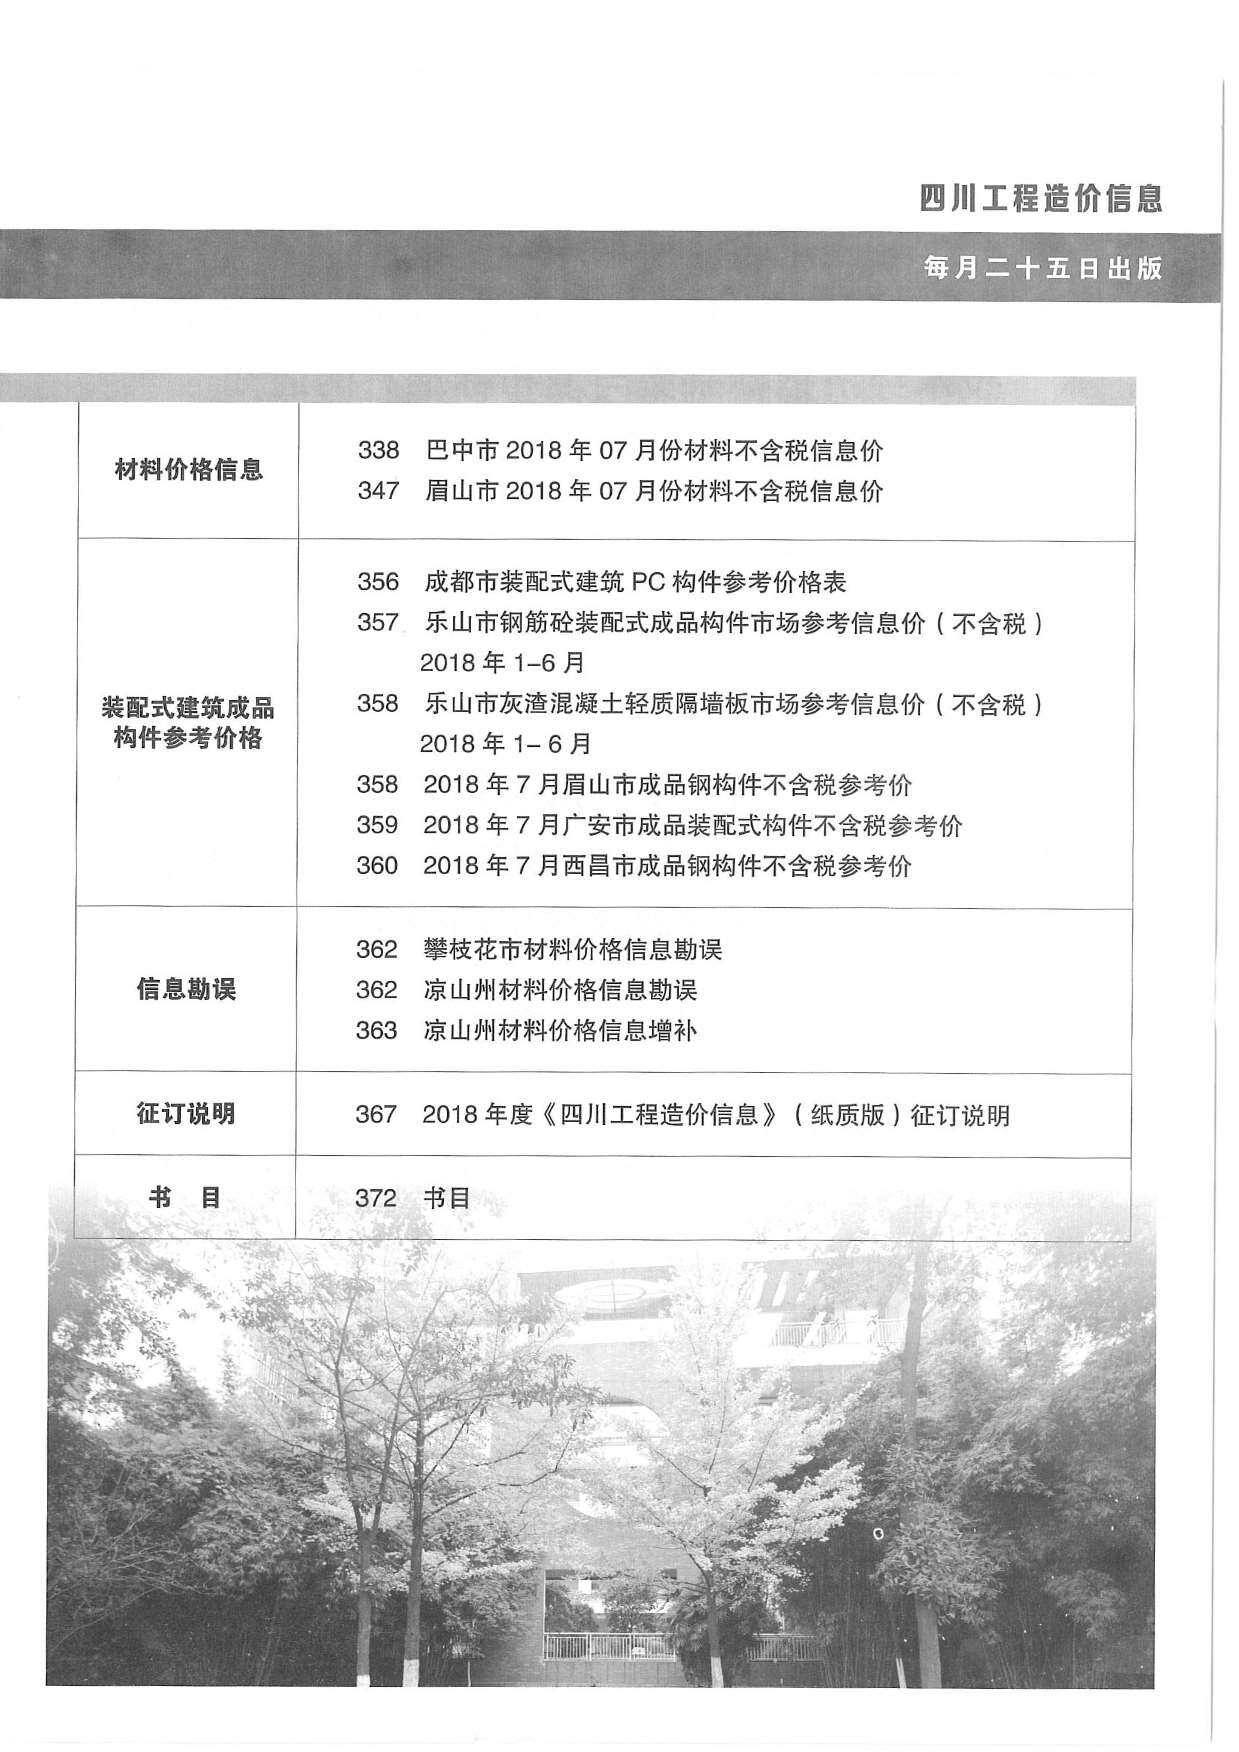 四川省2018年8月工程造价信息期刊